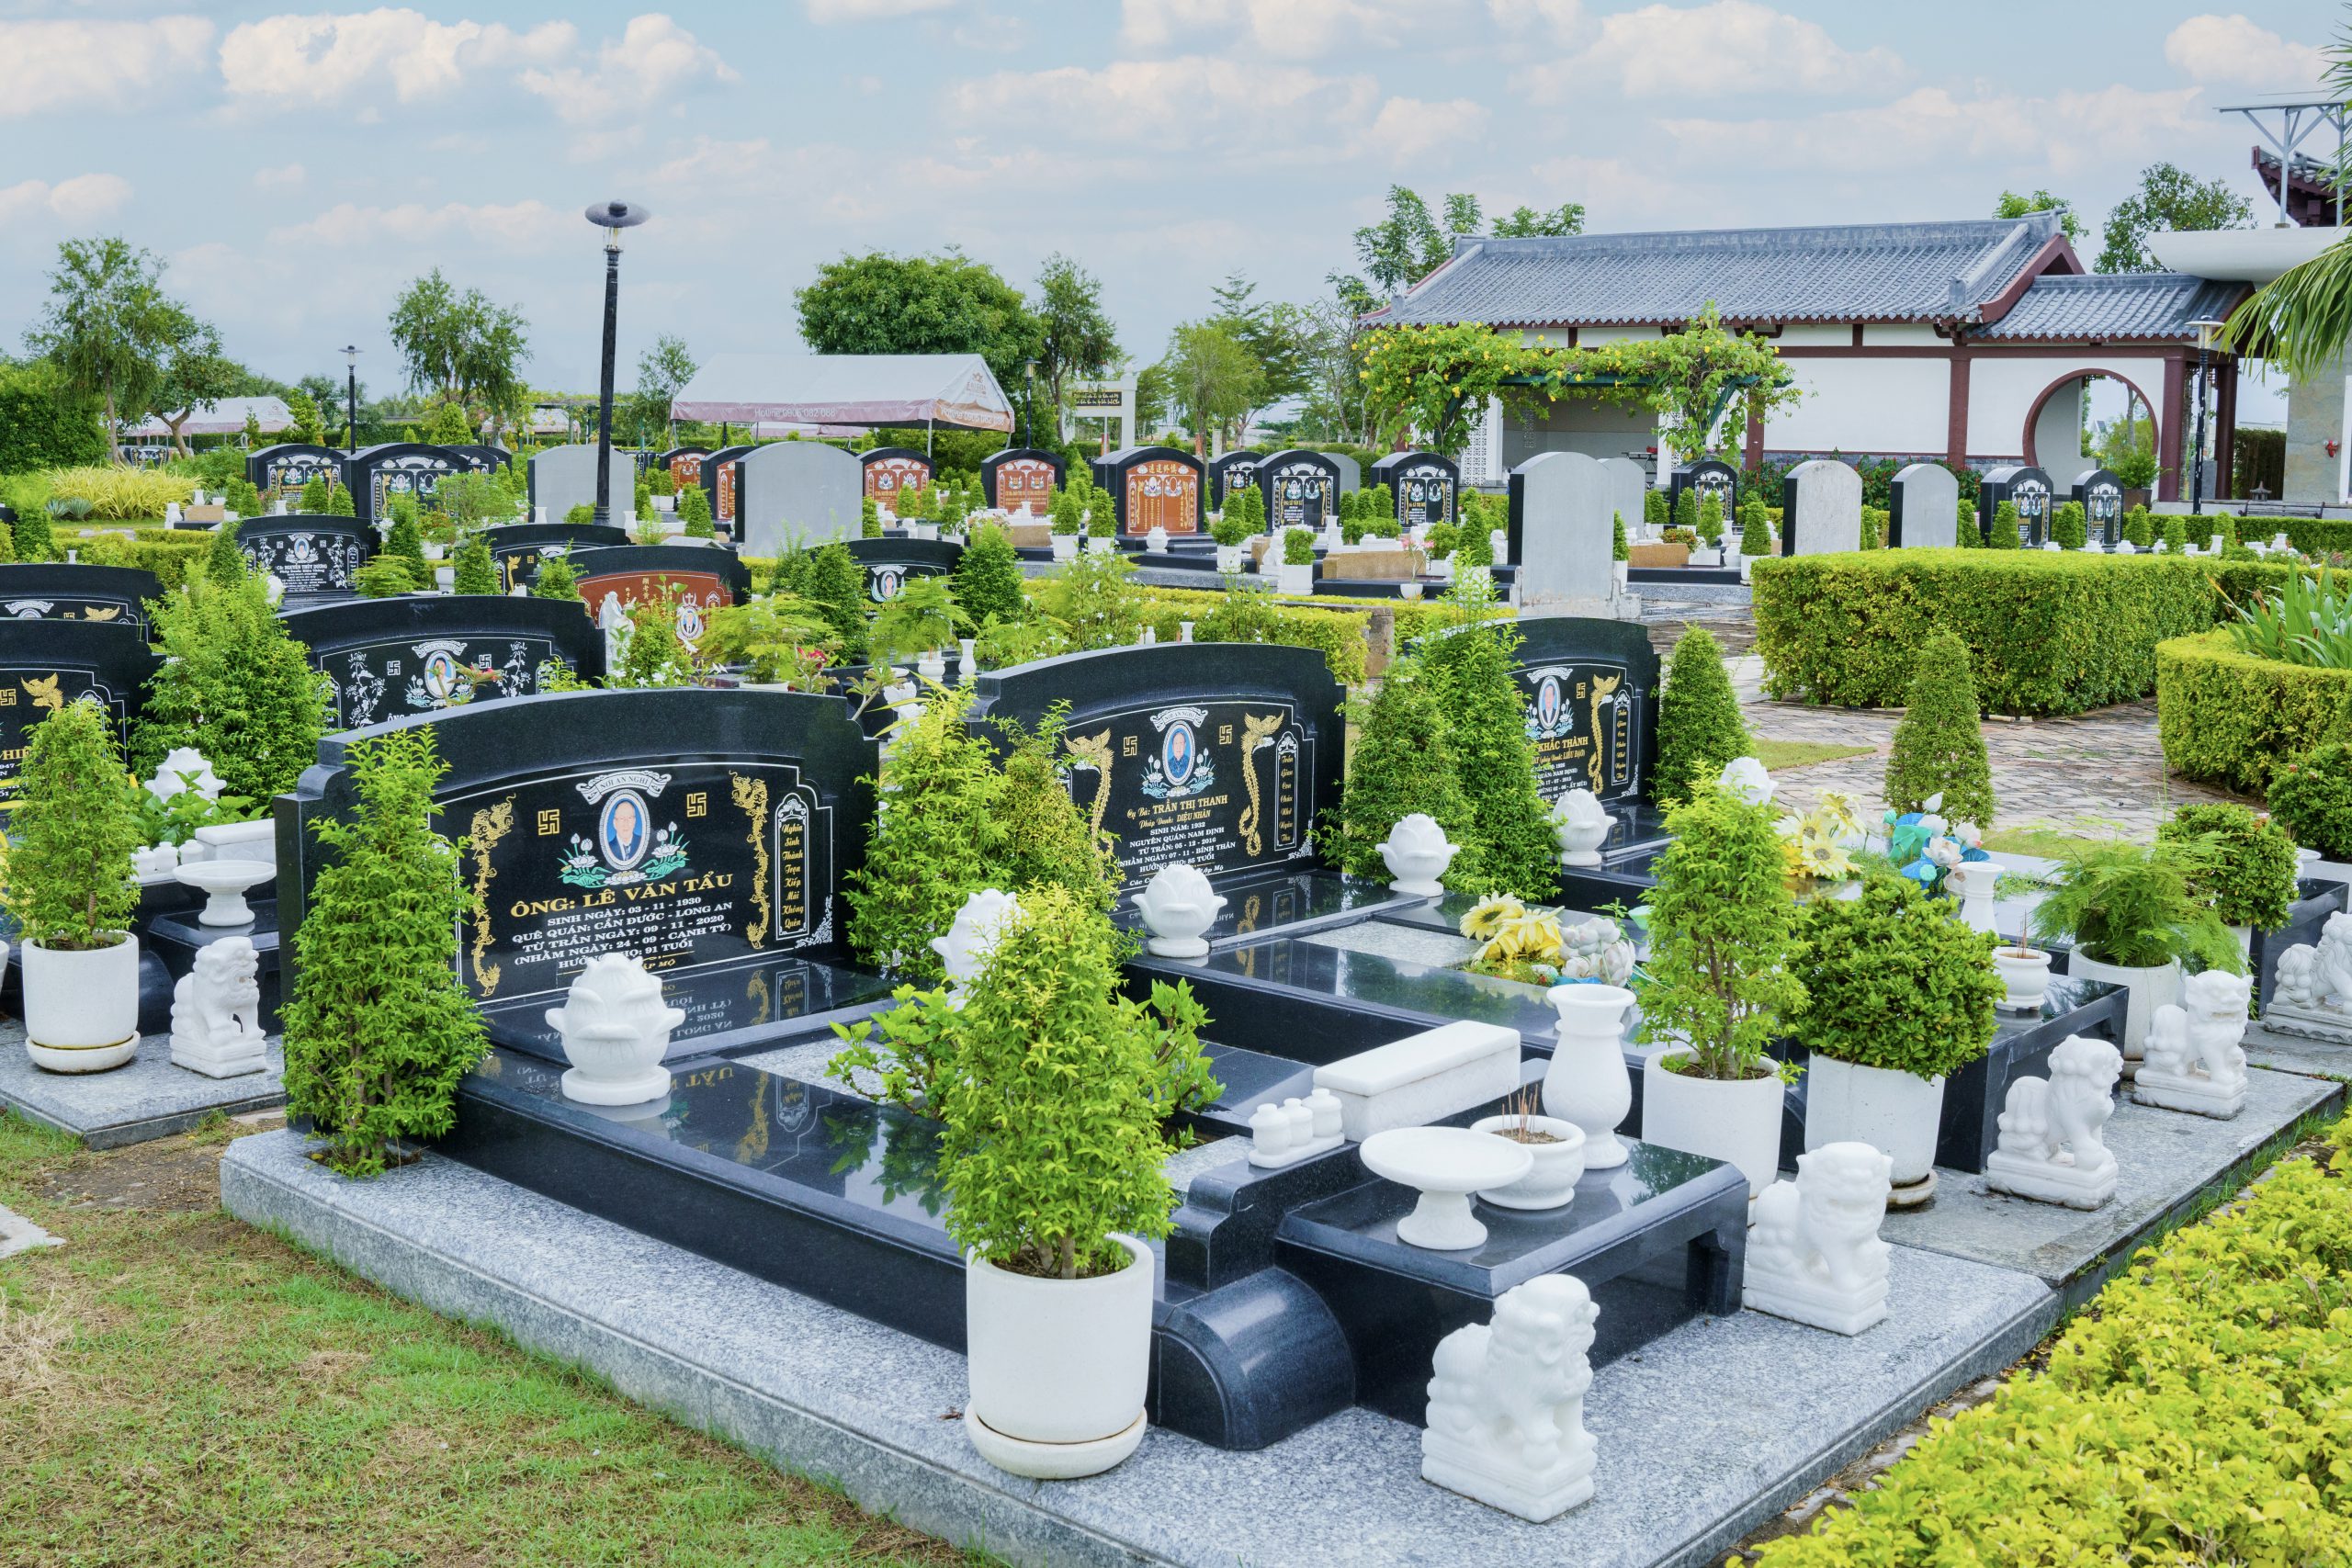 10 Điều đại kỵ khi lựa chọn đất chôn cất cho người quá cố